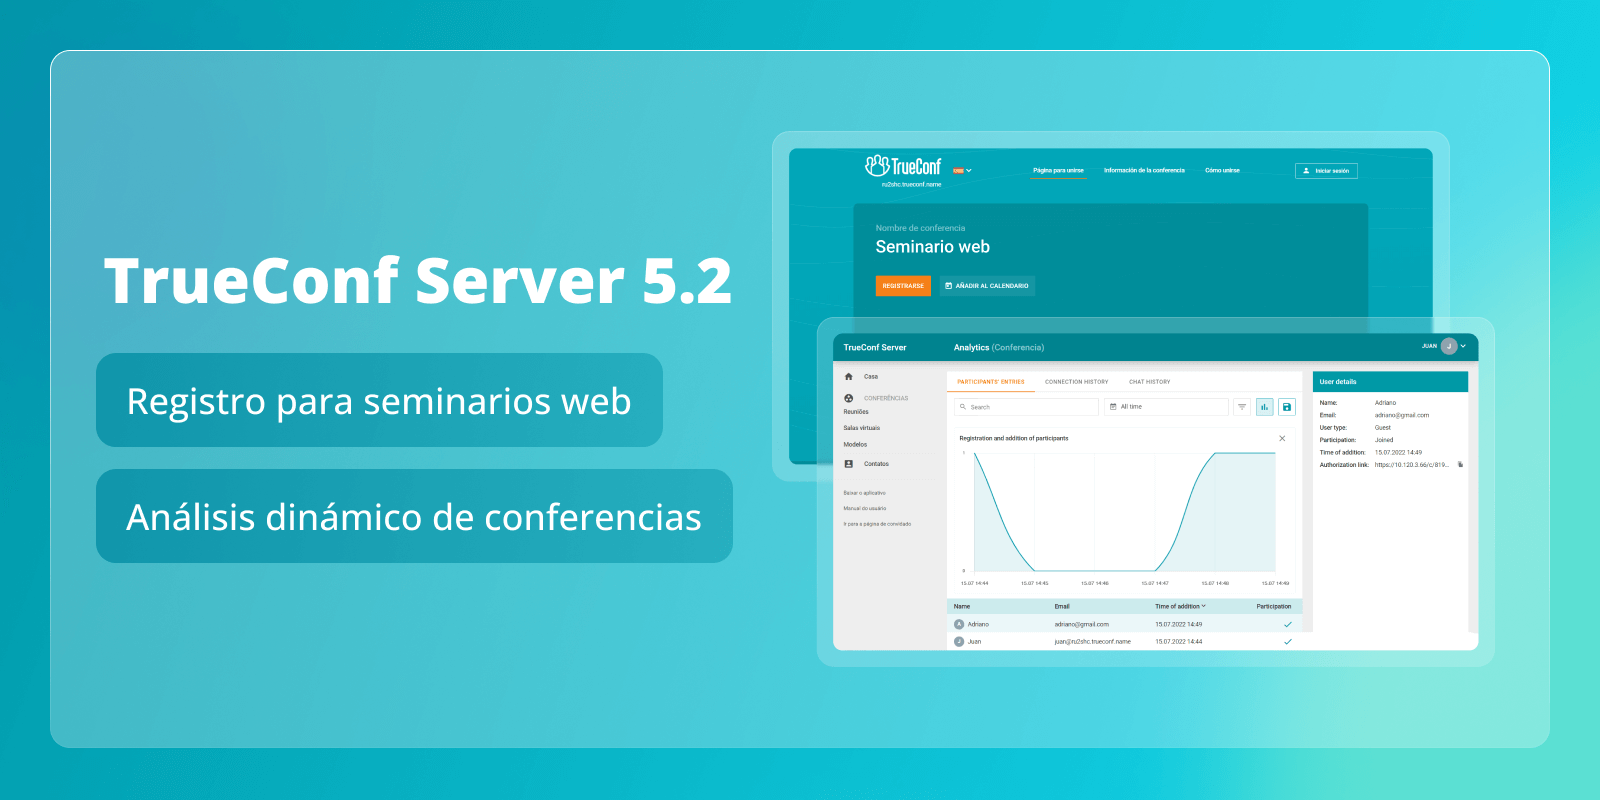 TrueConf Server 5.2: registro para seminarios web y análisis dinámico de la conferencia 2